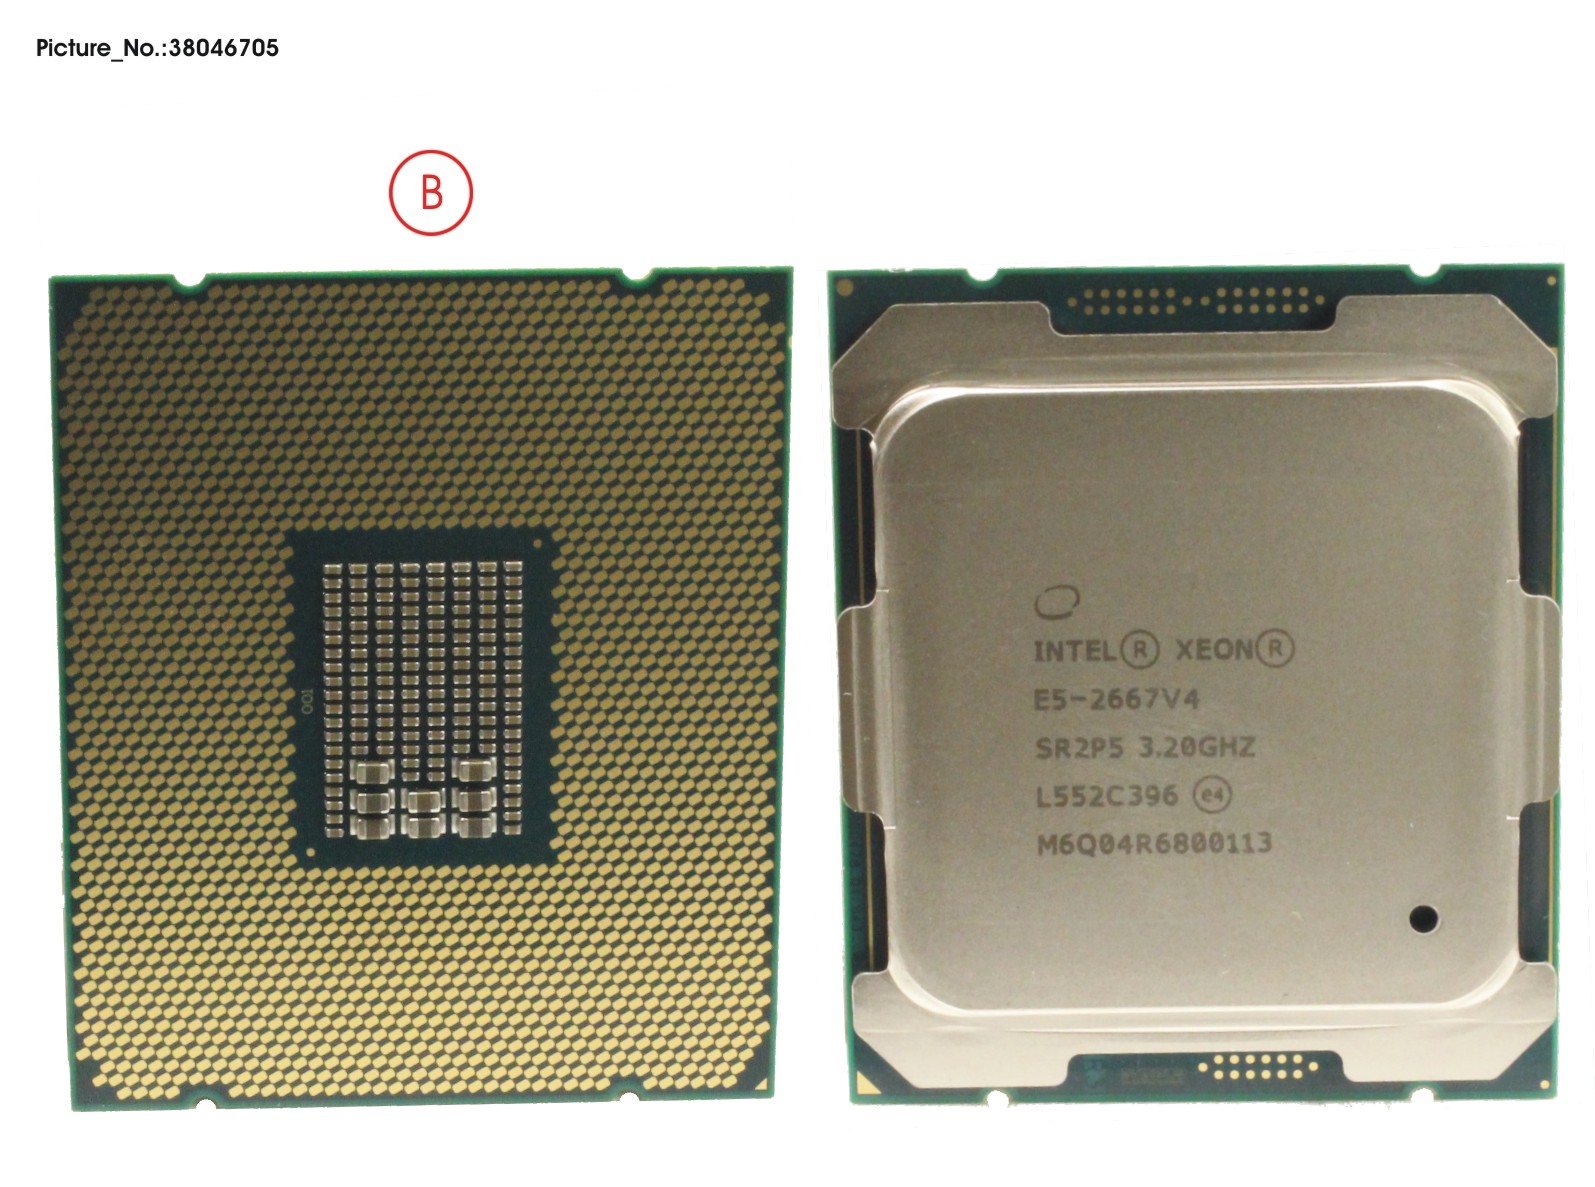 FUJITSU CPU XEON E5-2667V4 3,2GHZ 135W